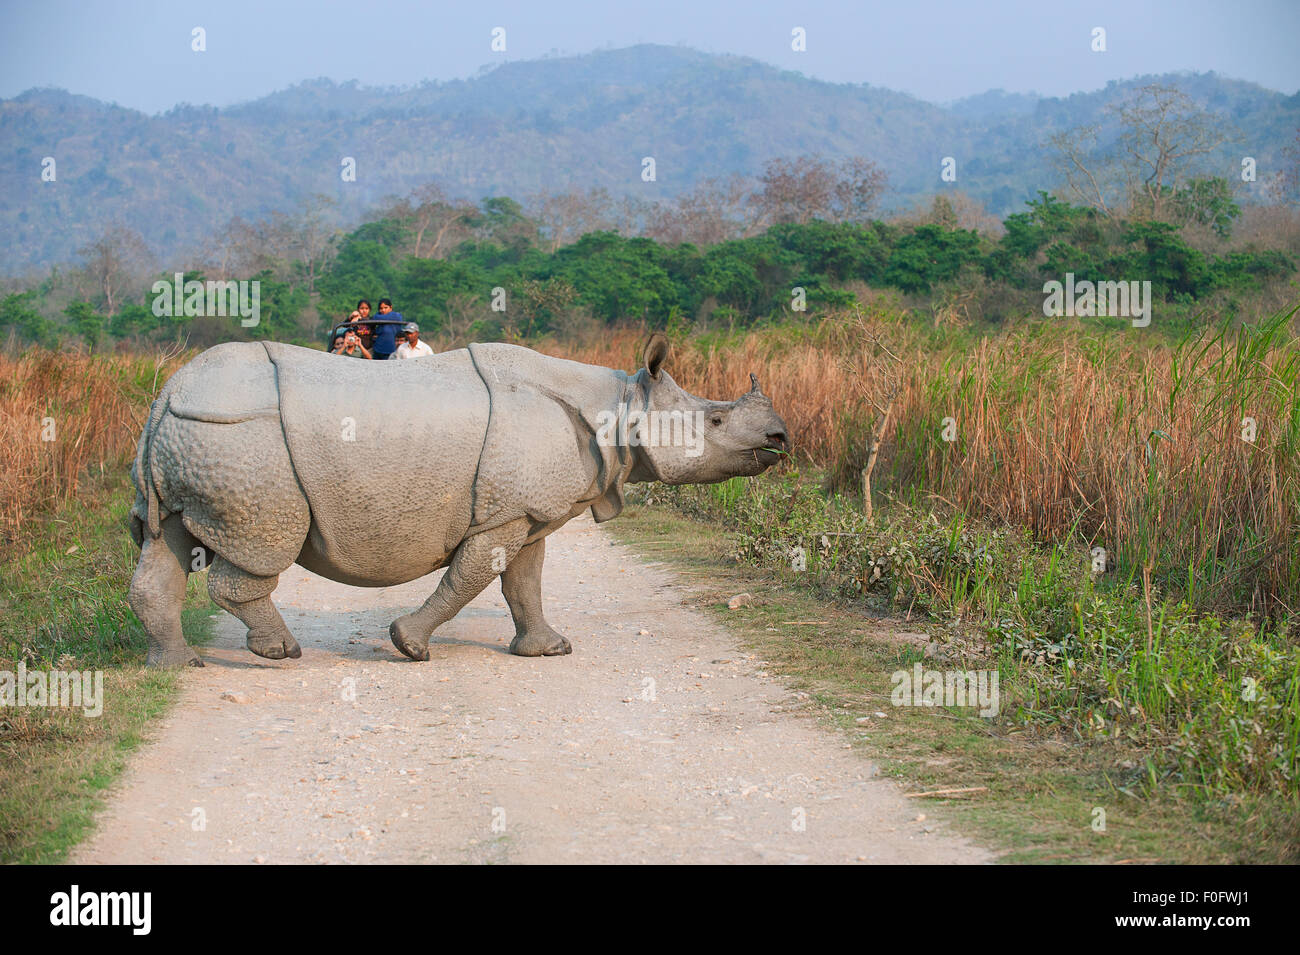 L'image a été tourné dans le parc national de Kaziranga en Inde Banque D'Images